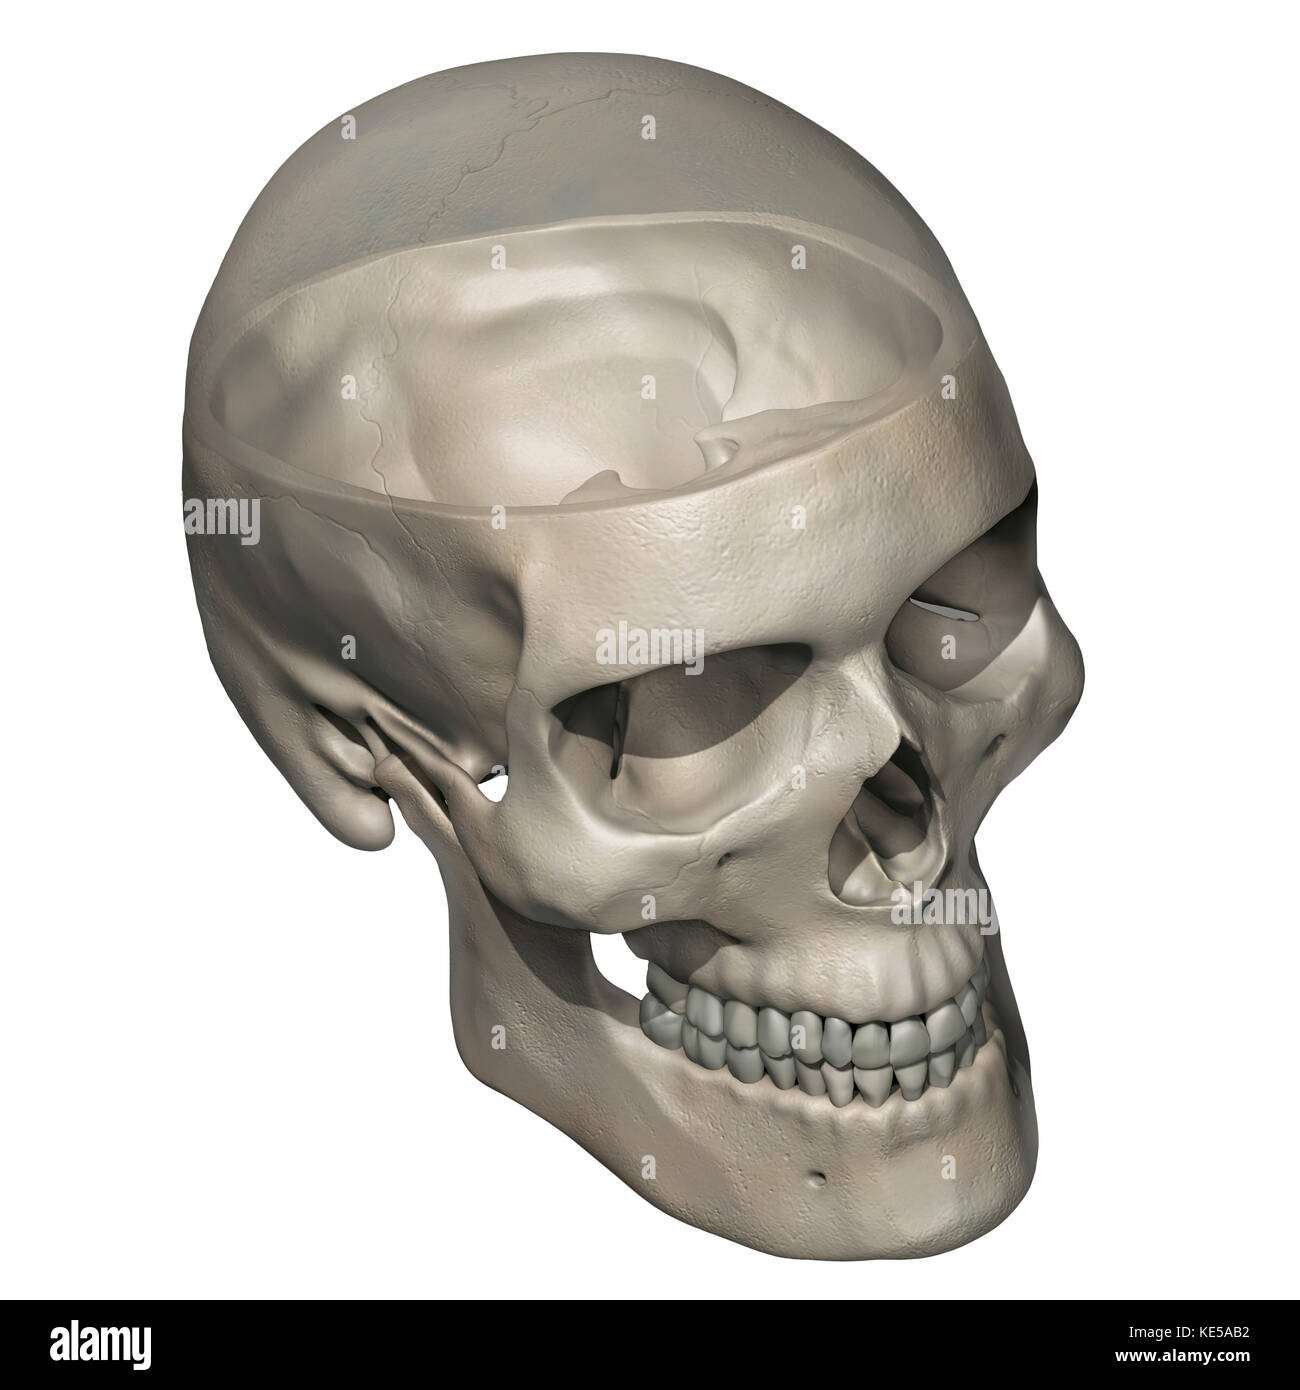 Drei Viertel Ansicht von der menschlichen Schädel Anatomie mit transparenten calvarium. Stockfoto